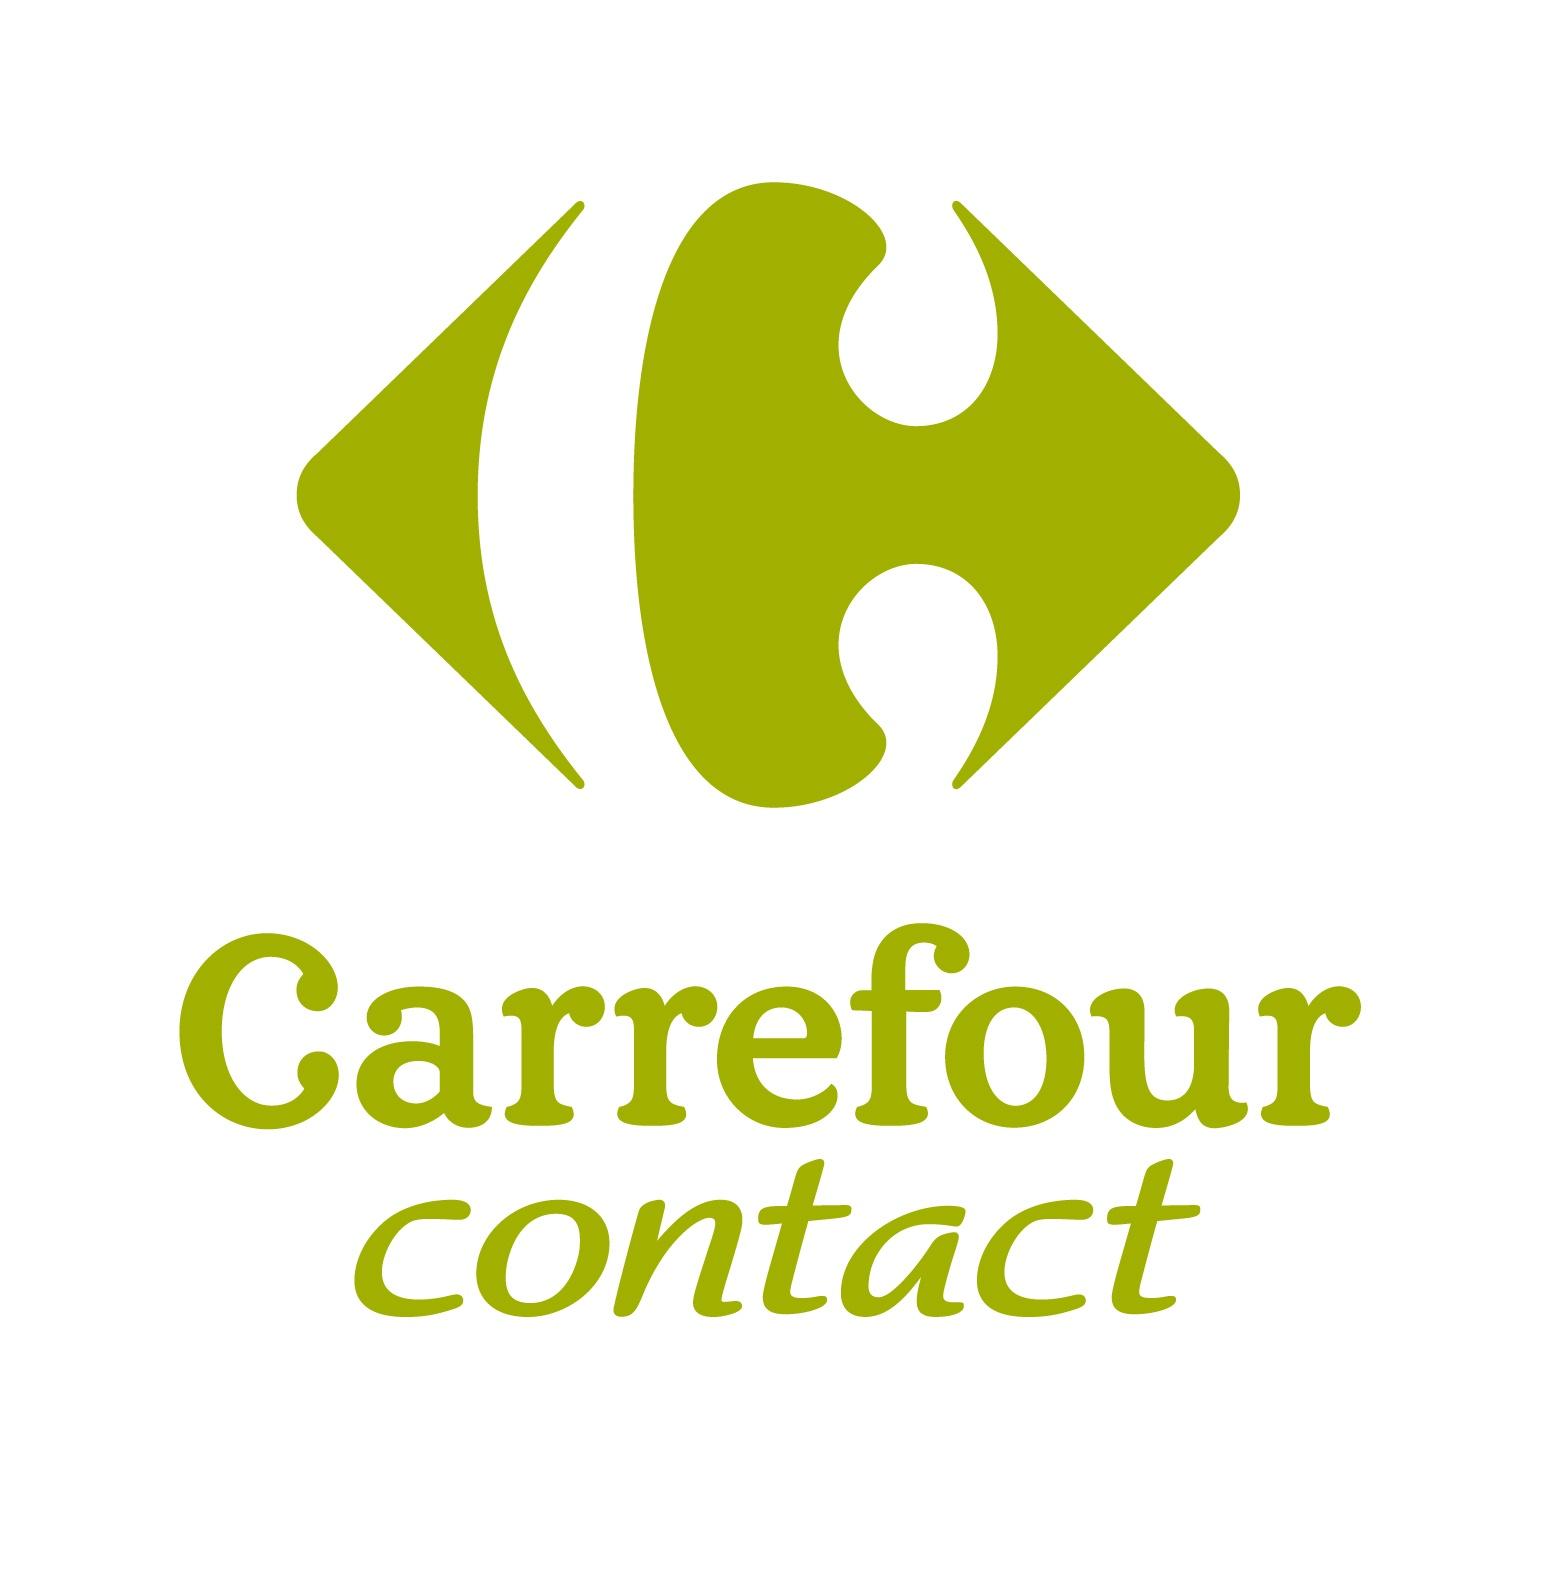 Carrefour Contact Somain